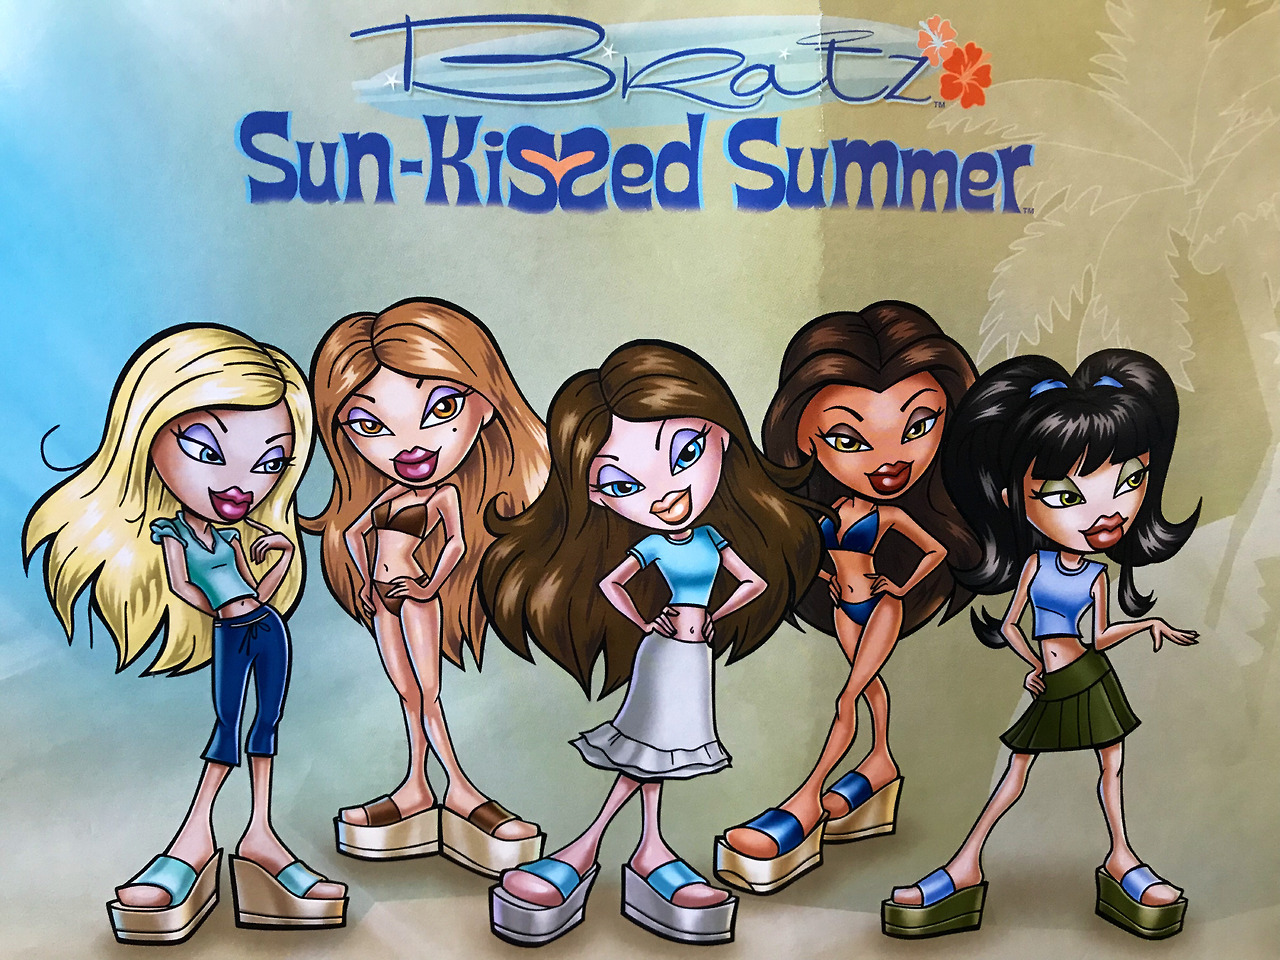 Bratz Sun-Kissed Summer Dana